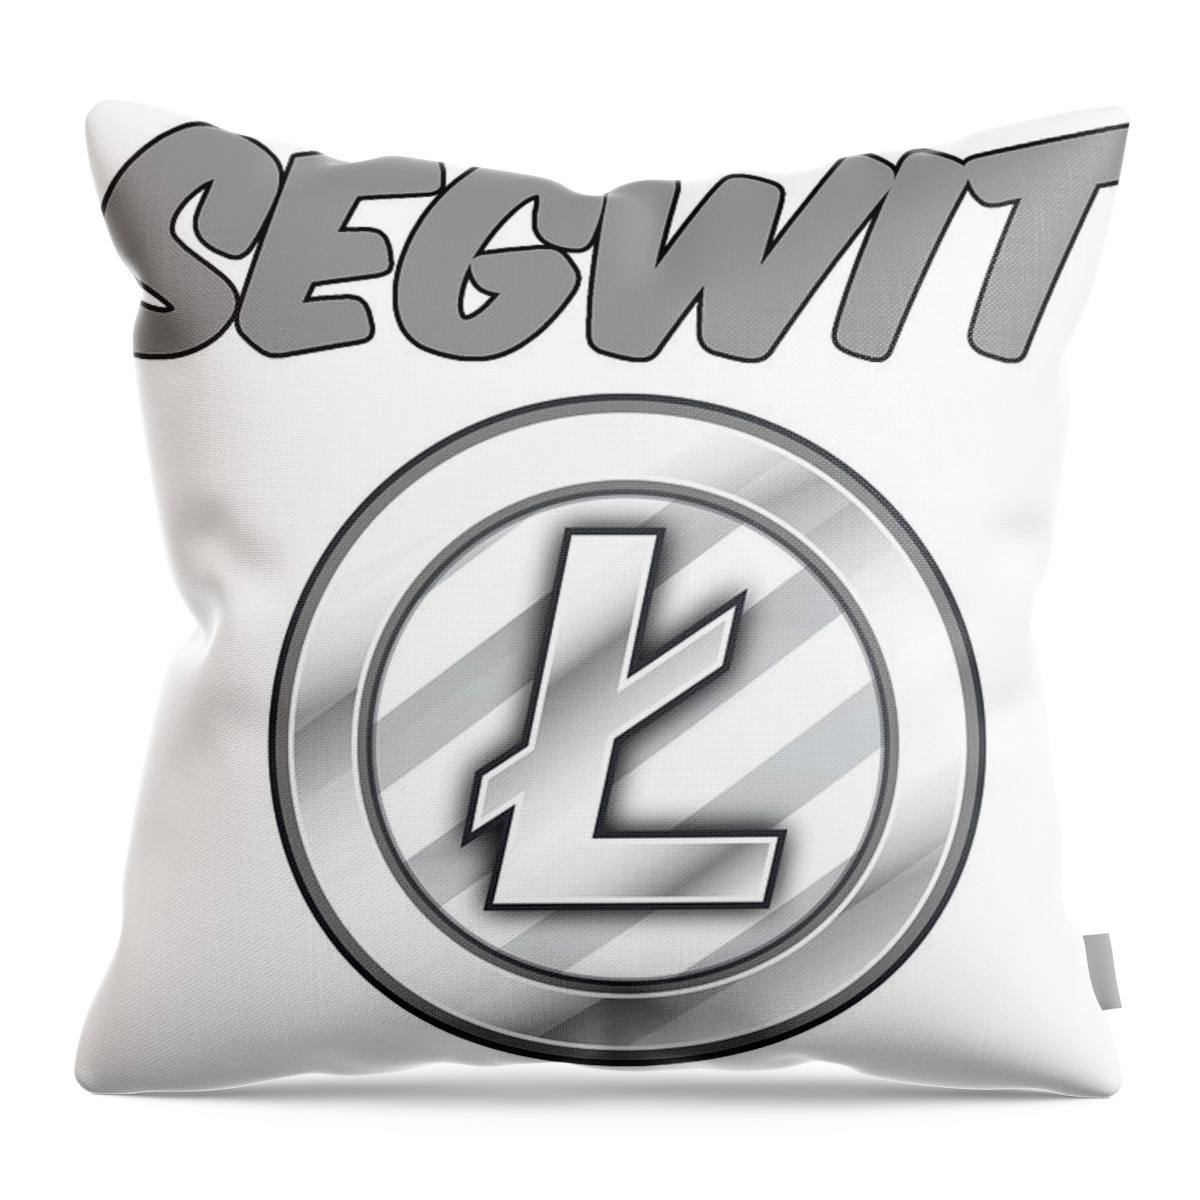 Ltc Throw Pillow featuring the digital art Litecoin Segwit by Britten Adams